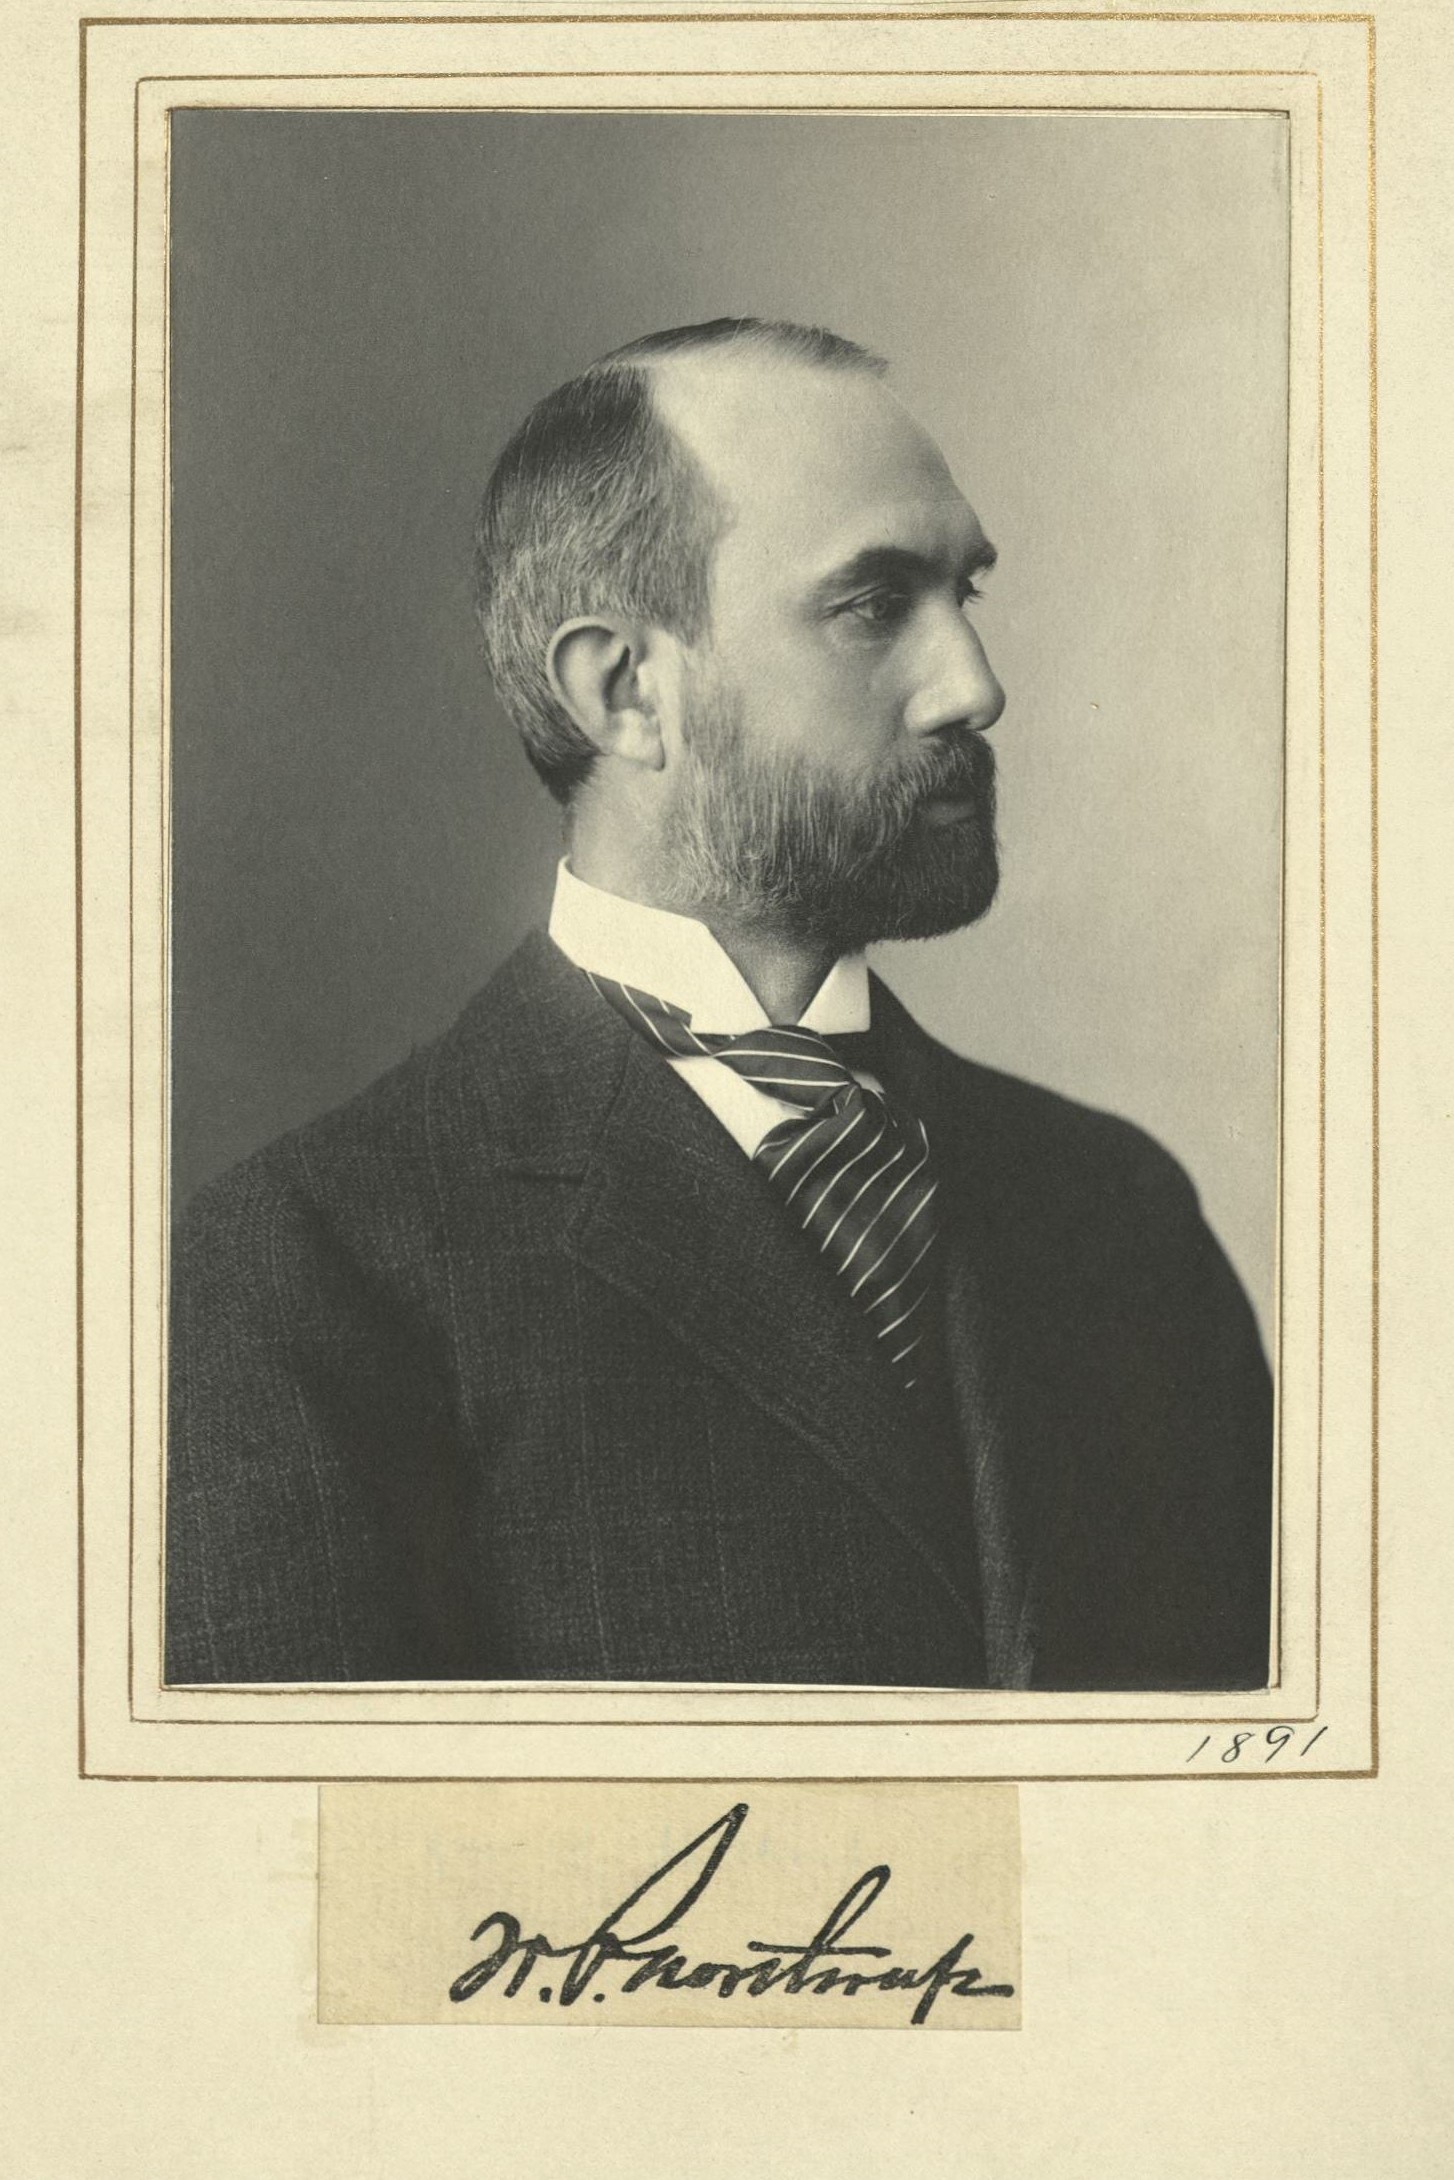 Member portrait of William P. Northrup